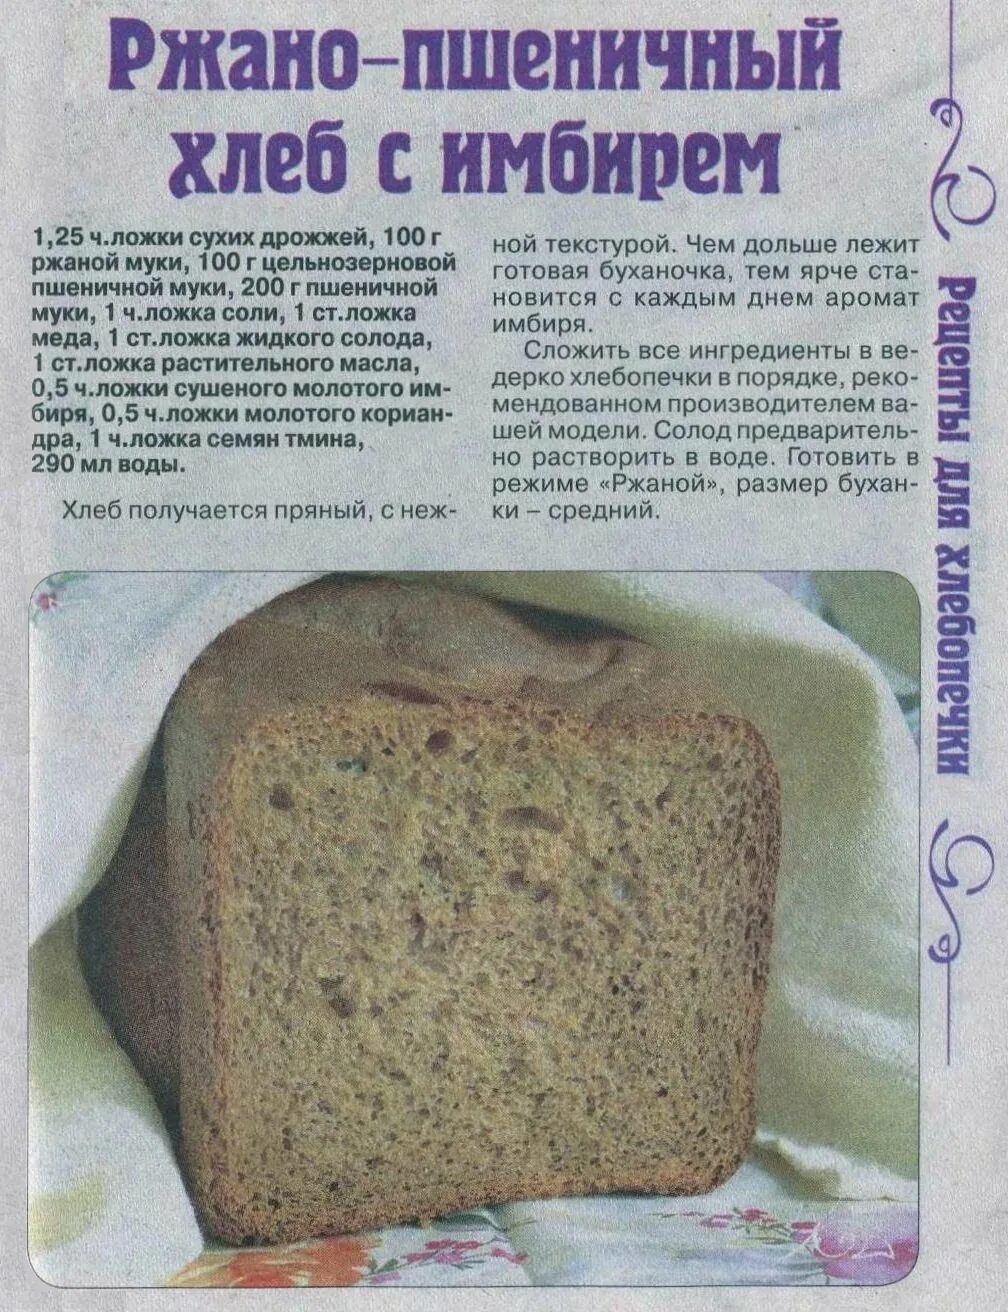 Рецепт хлеба в хлебопечке. Тесто на хлеб в хлебопечке. Домашний хлеб в хлебопечке. Рецептура ржаного хлеба. 1000 рецепты хлеба